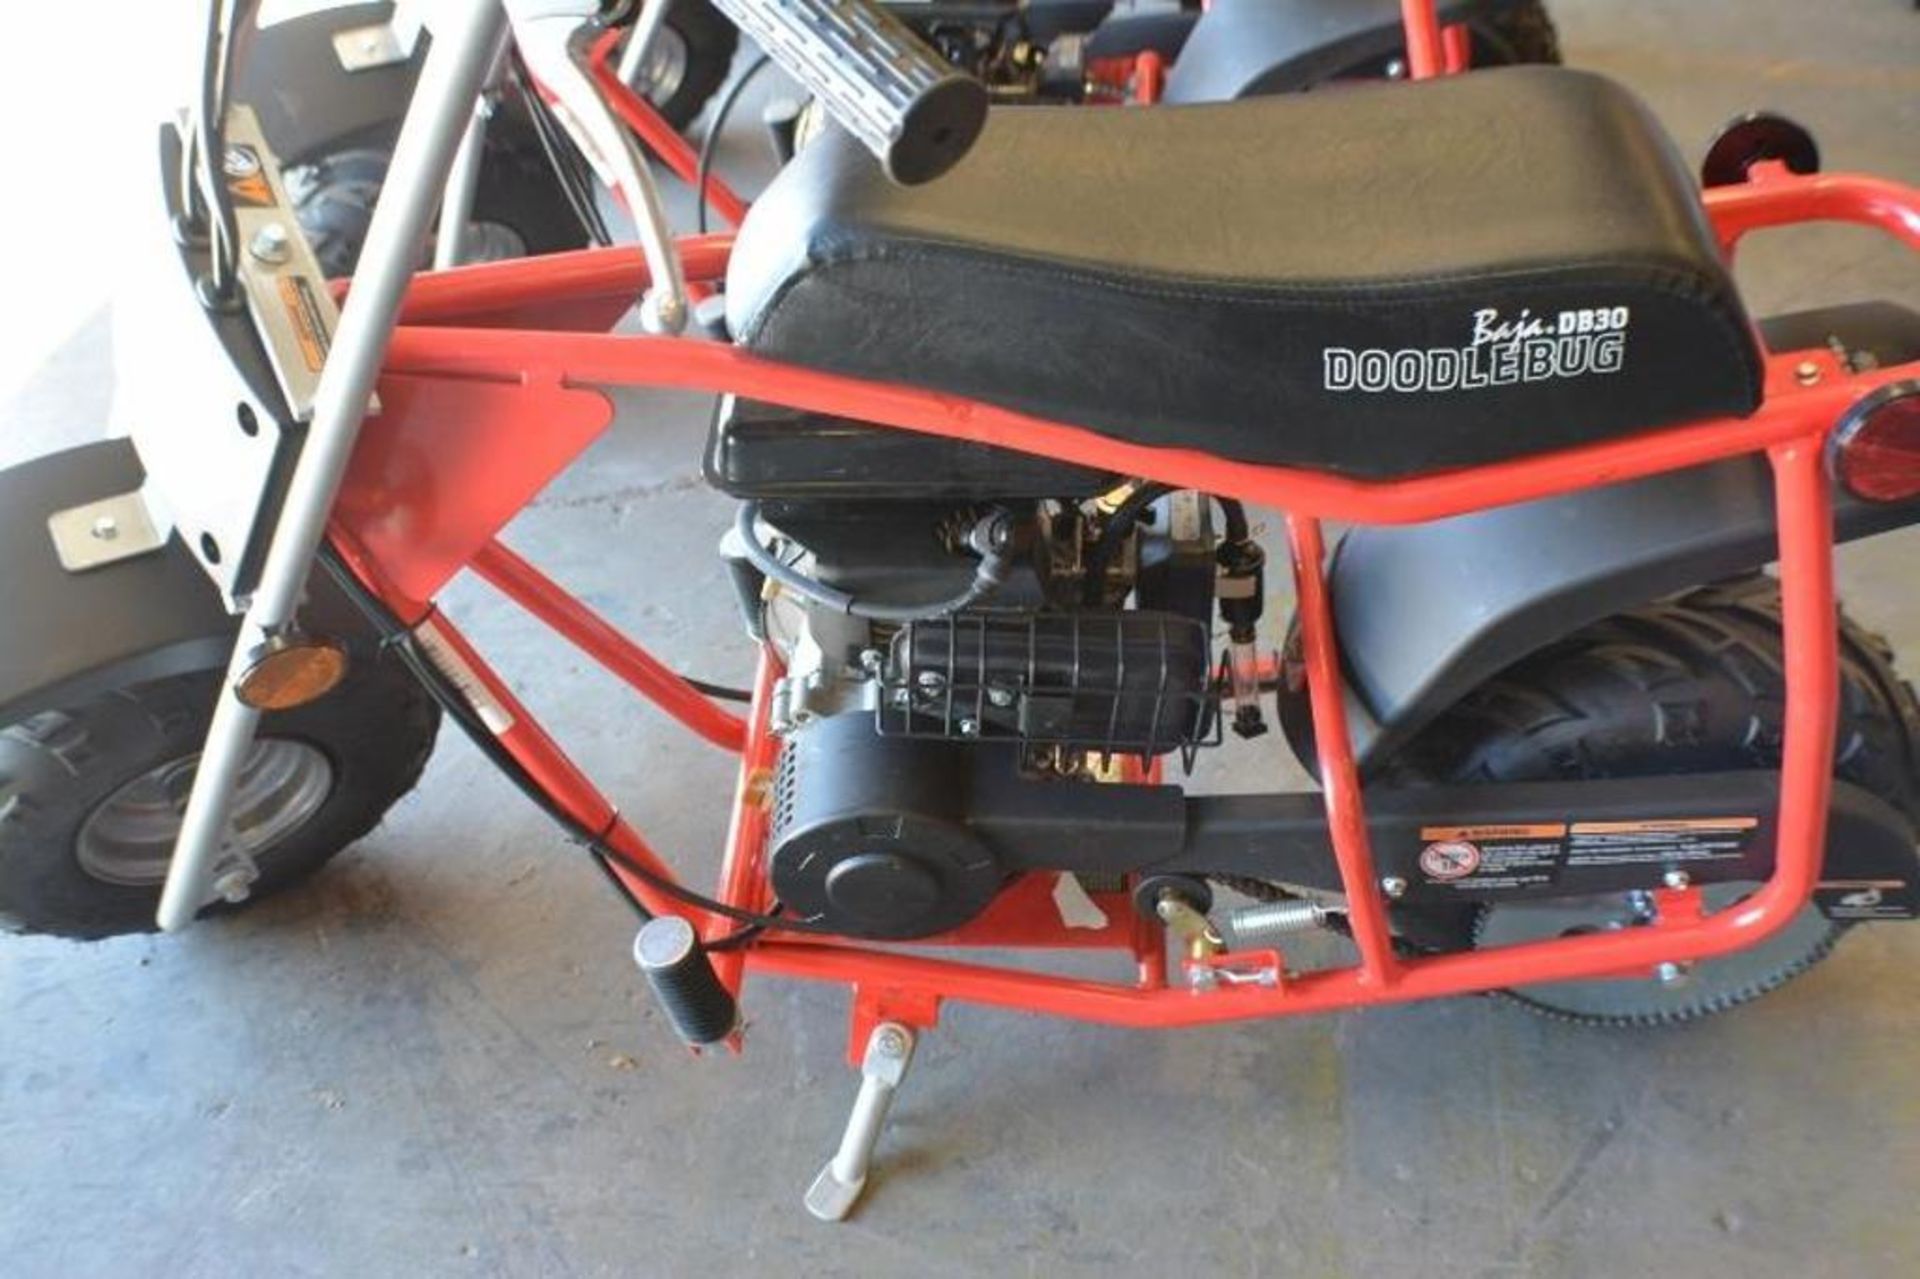 Mini Bike 97cc 4 Stroke Red/ Black Color - Image 3 of 6